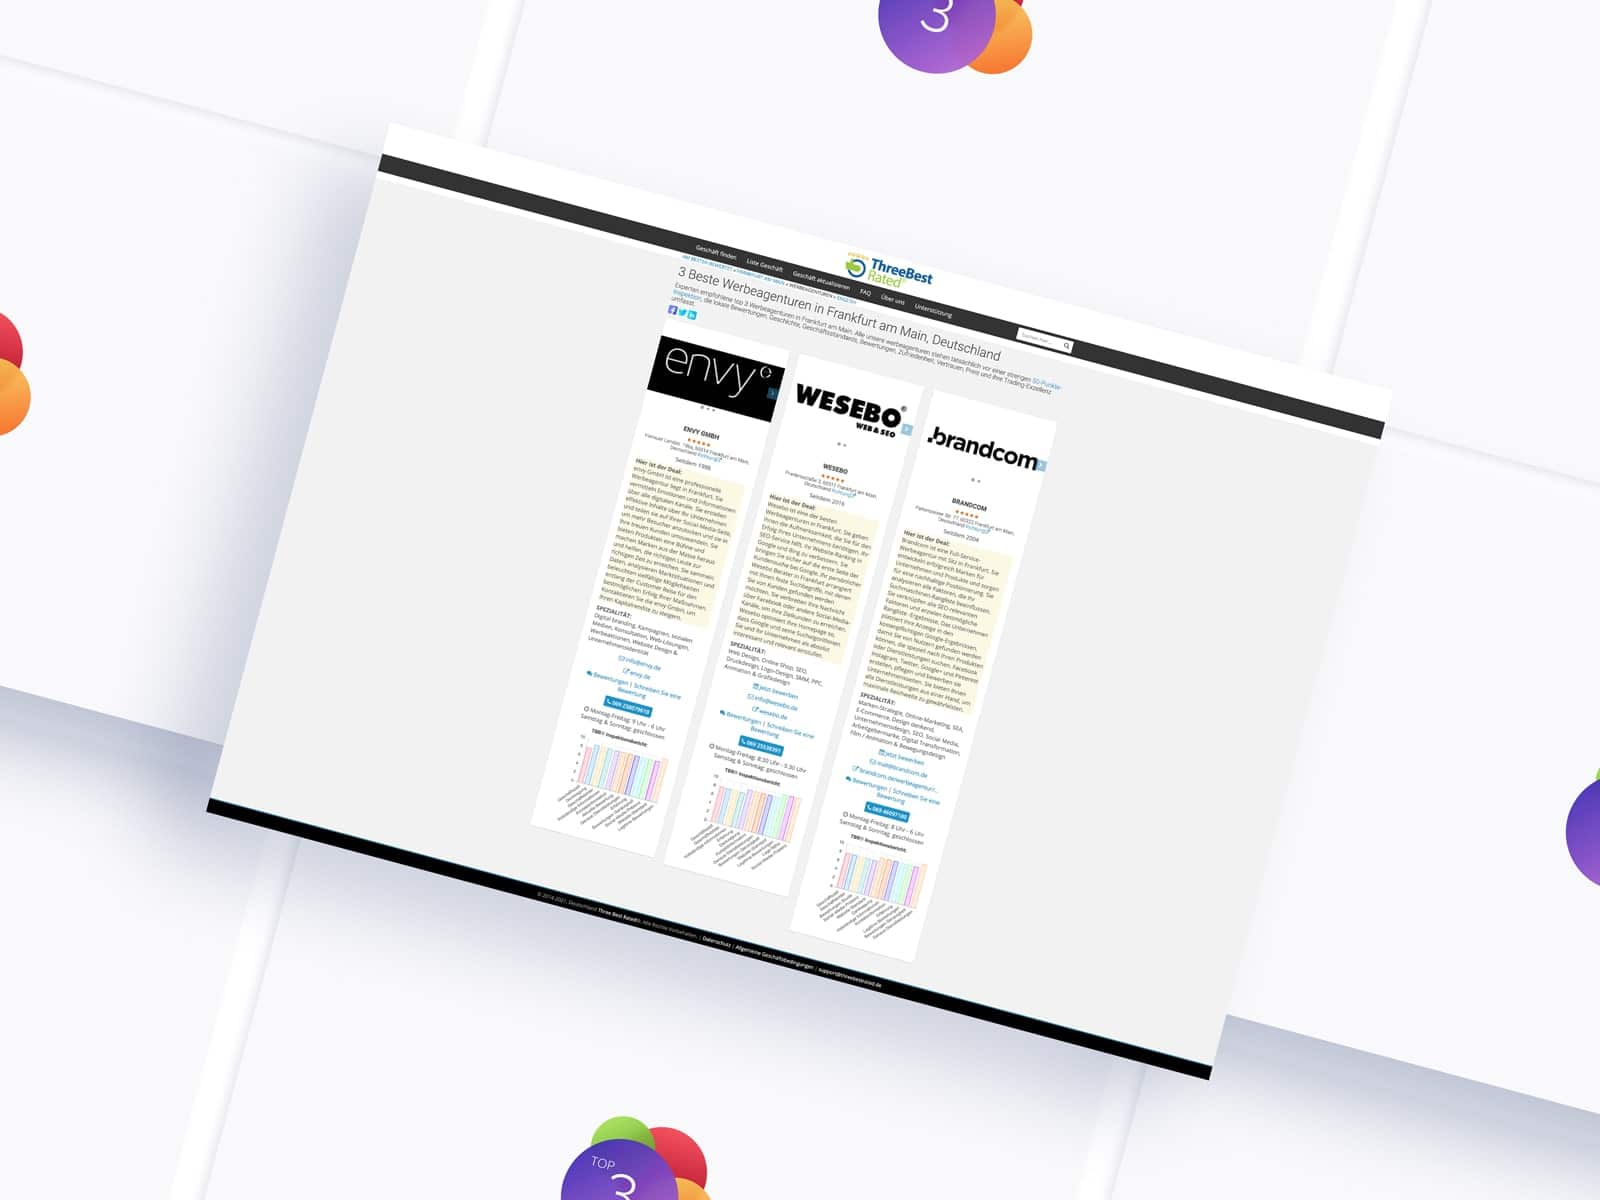 werbeagentur seo homepage erstellen webdesign marketing digital grafikdesign suchmaschinenoptimierung agentur frankfurt am main